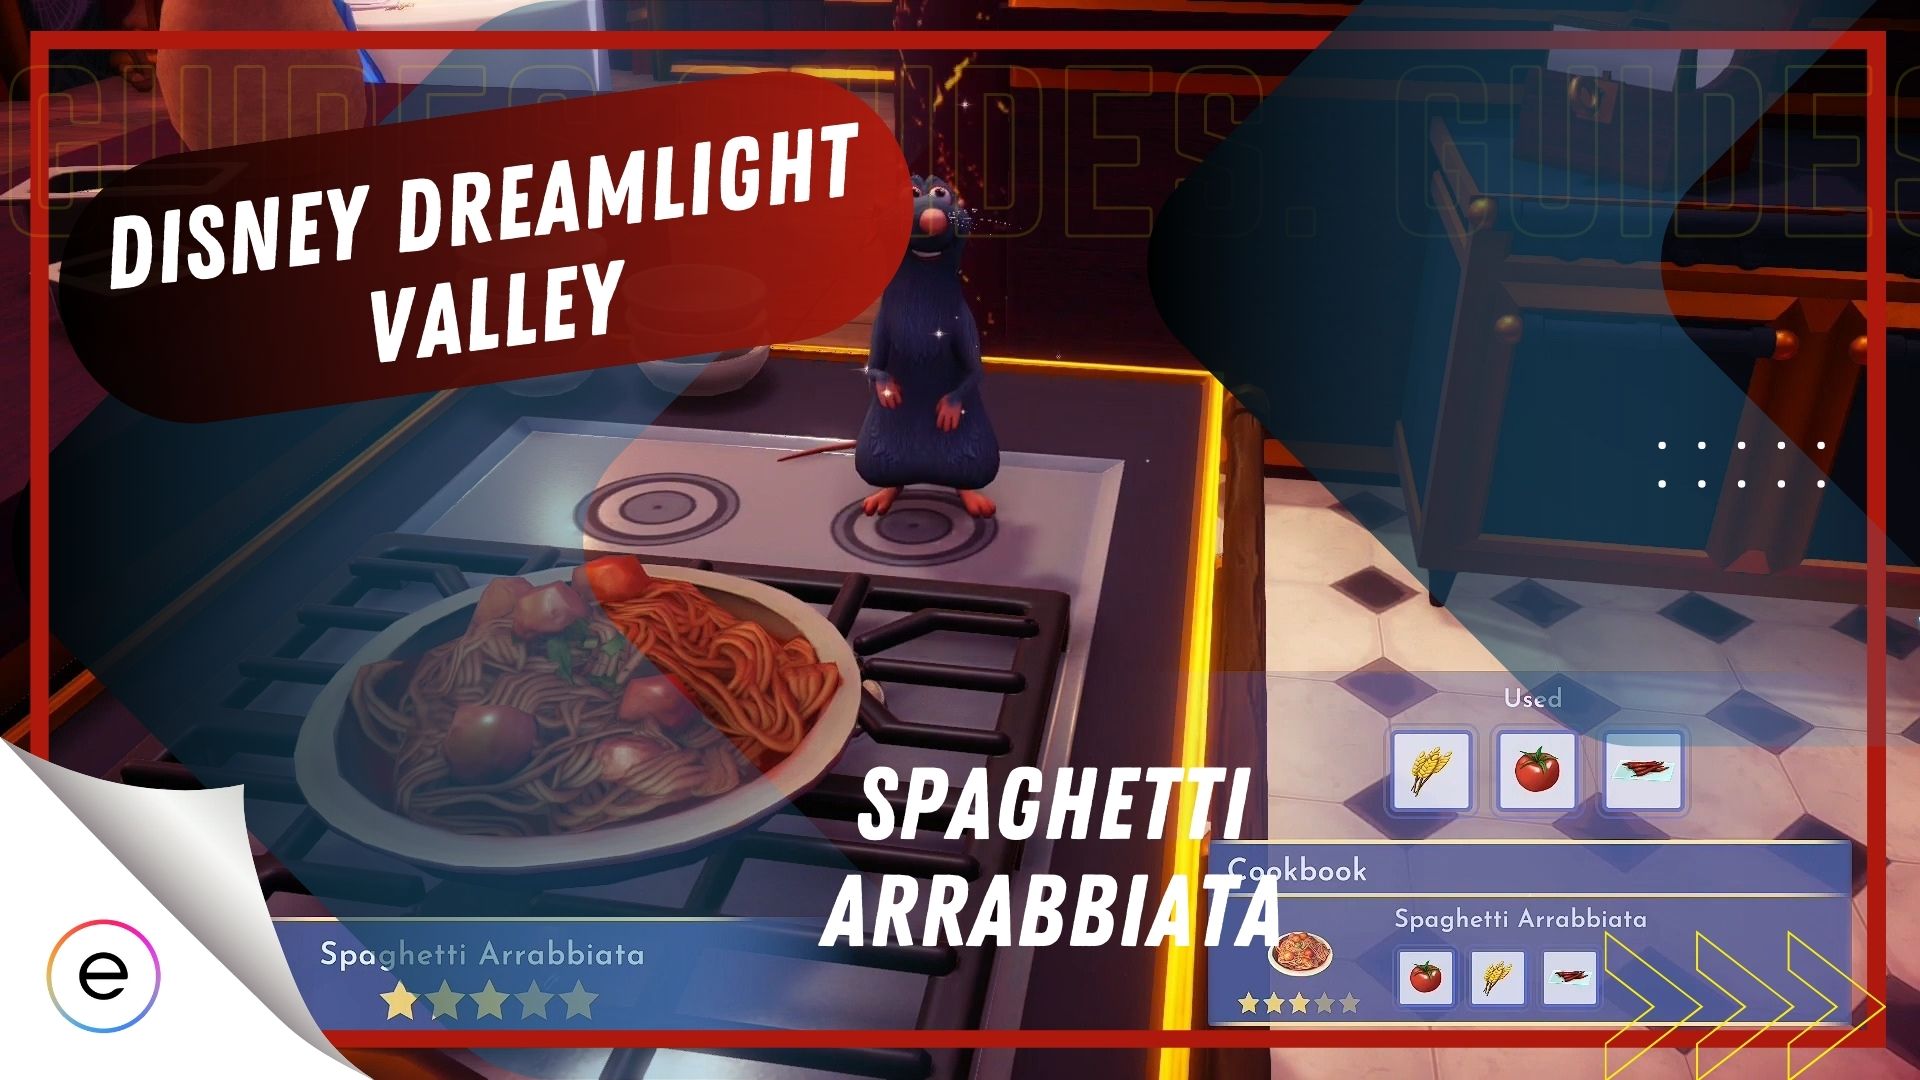 The Spaghetti Arrabbiata recipe in Disney Dreamlight Valley.